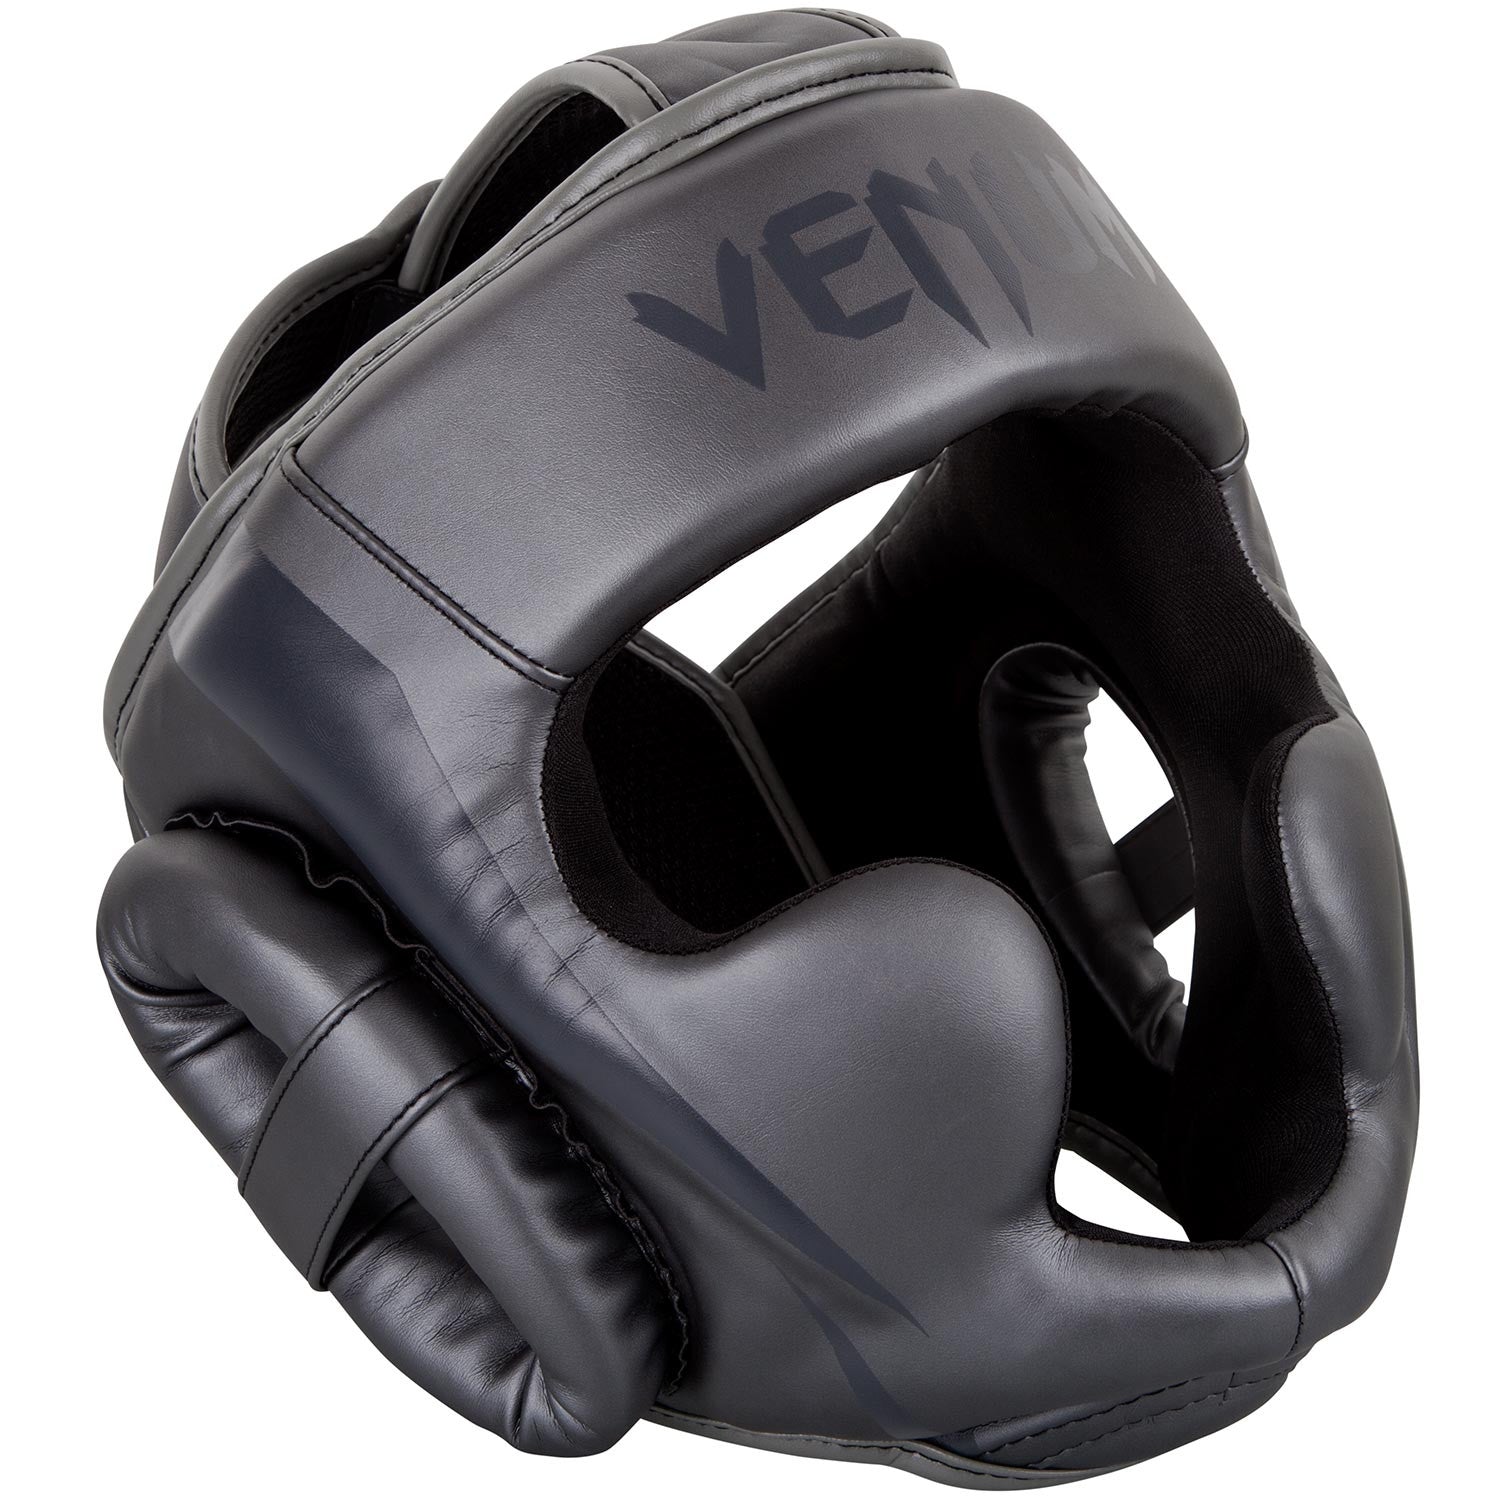 Venum Elite prilba - univerzálna veľkosť, VENUM-1395-432